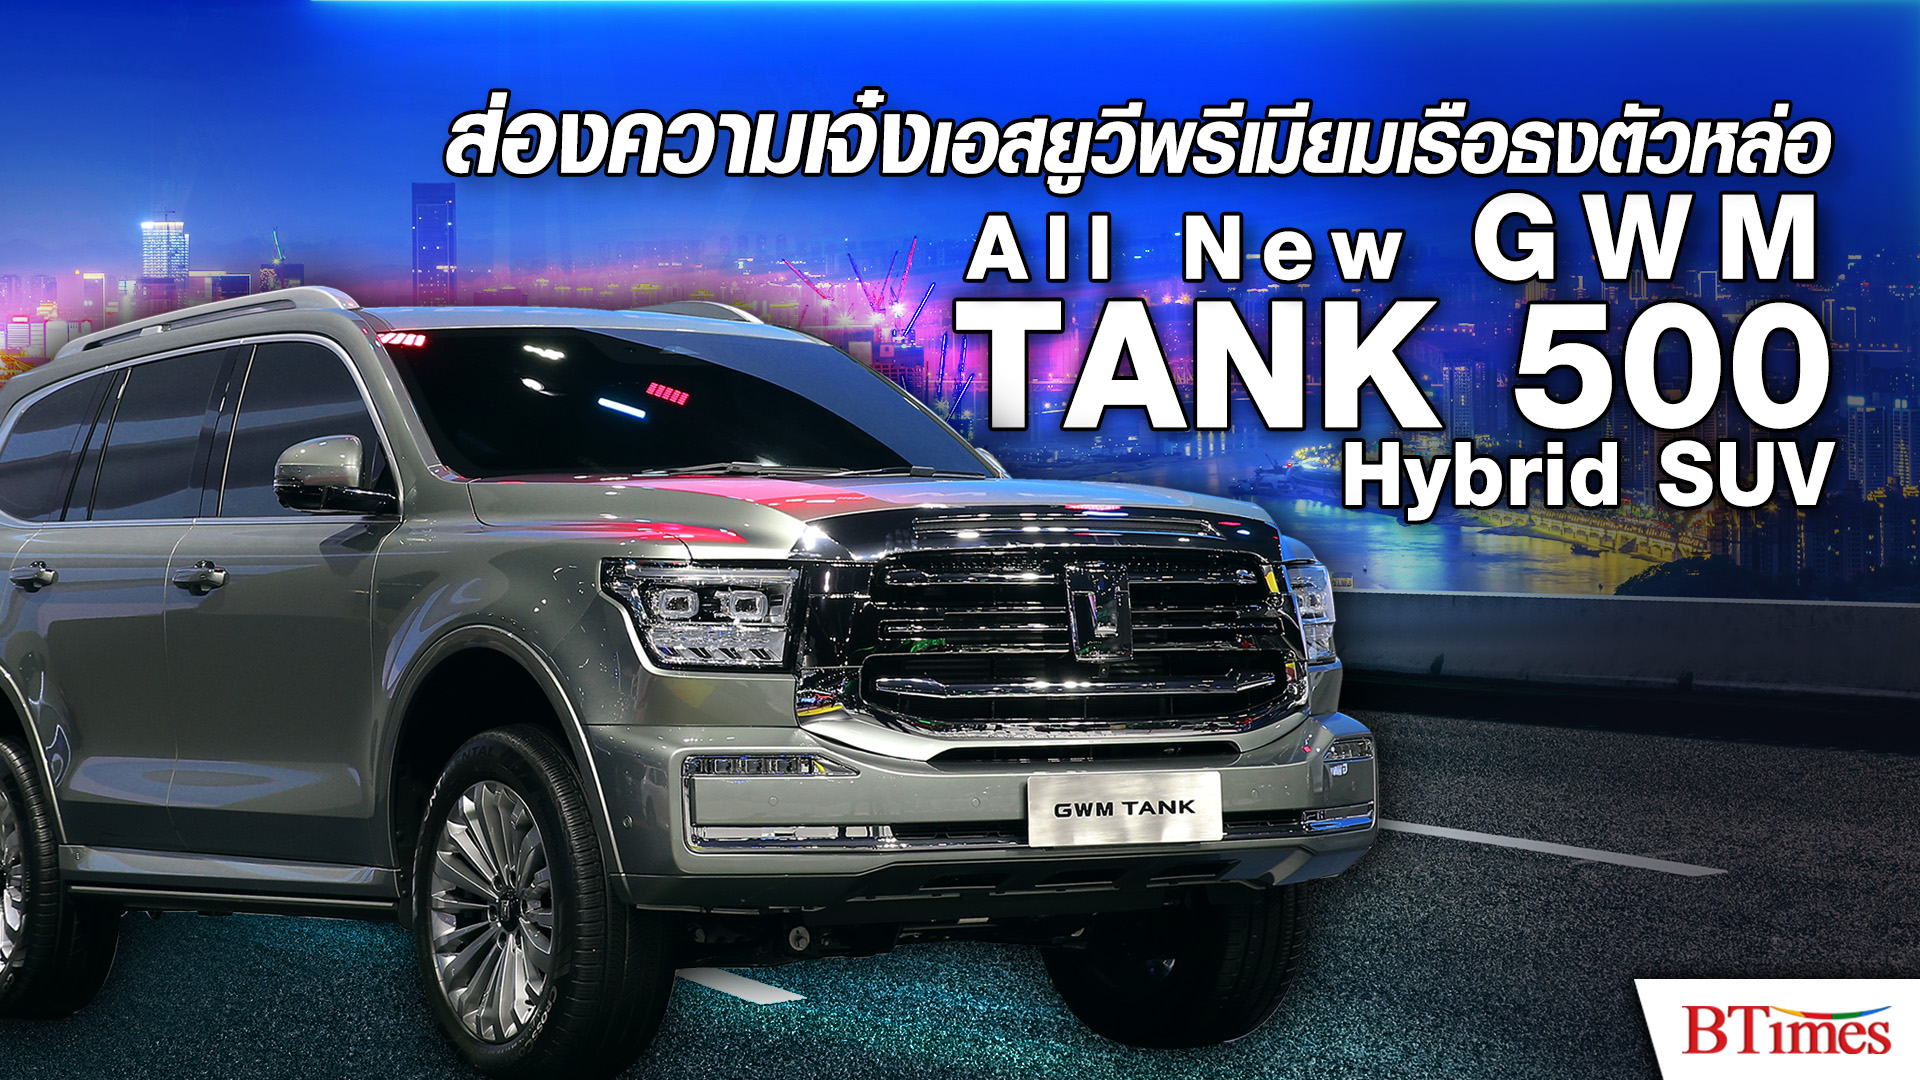 ส่องออพชั่นเด็ด ‘All New GWM TANK 500 Hybrid SUV’ เอสยูวีเรือธงในงาน Motor Show 2023 l BTimes